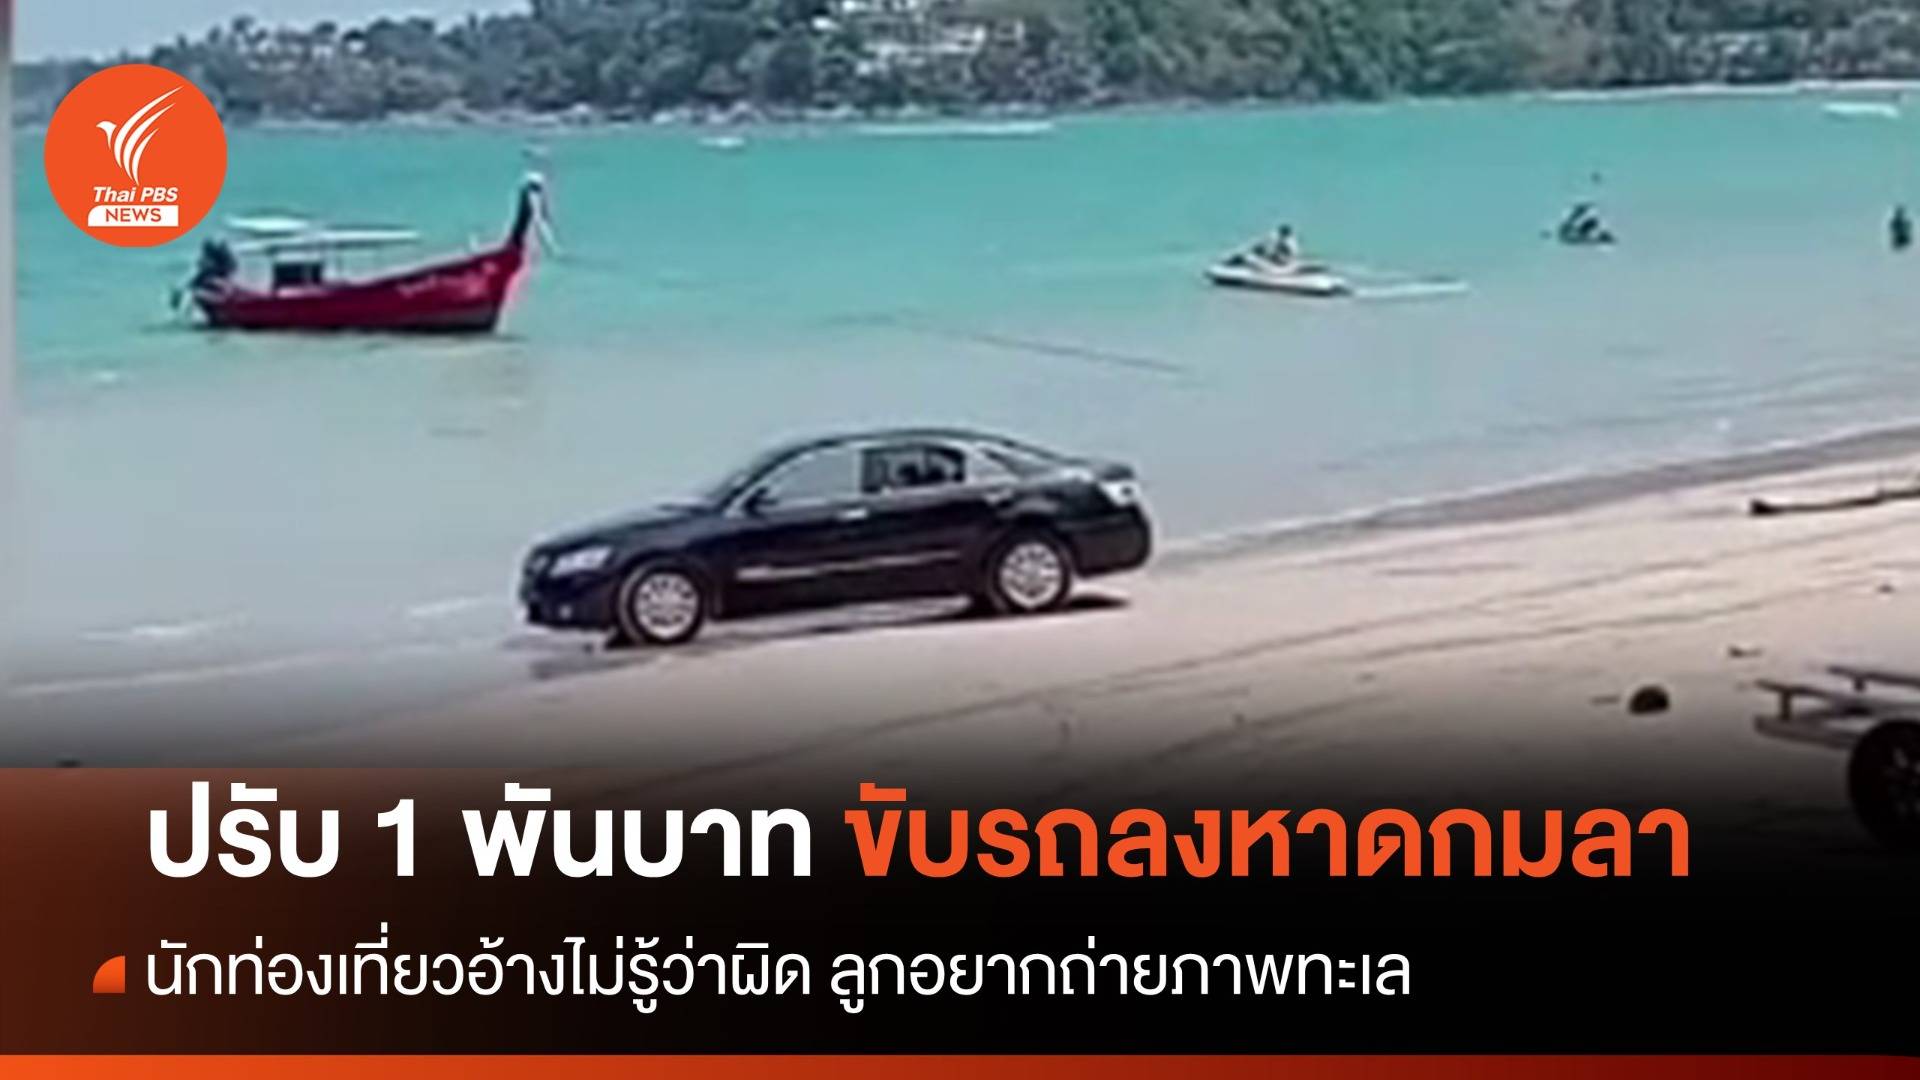 ปรับ 1 พัน นักท่องเที่ยวขับรถลงหาดกมลา อ้างลูกอยากถ่ายภาพทะเล